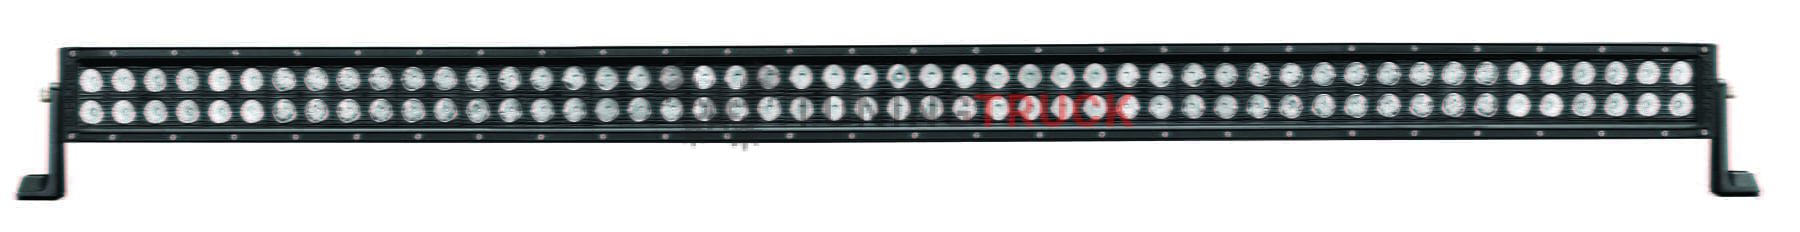 Светодиодная балка C50 серия C - 50 дюймов комбинированный свет #338